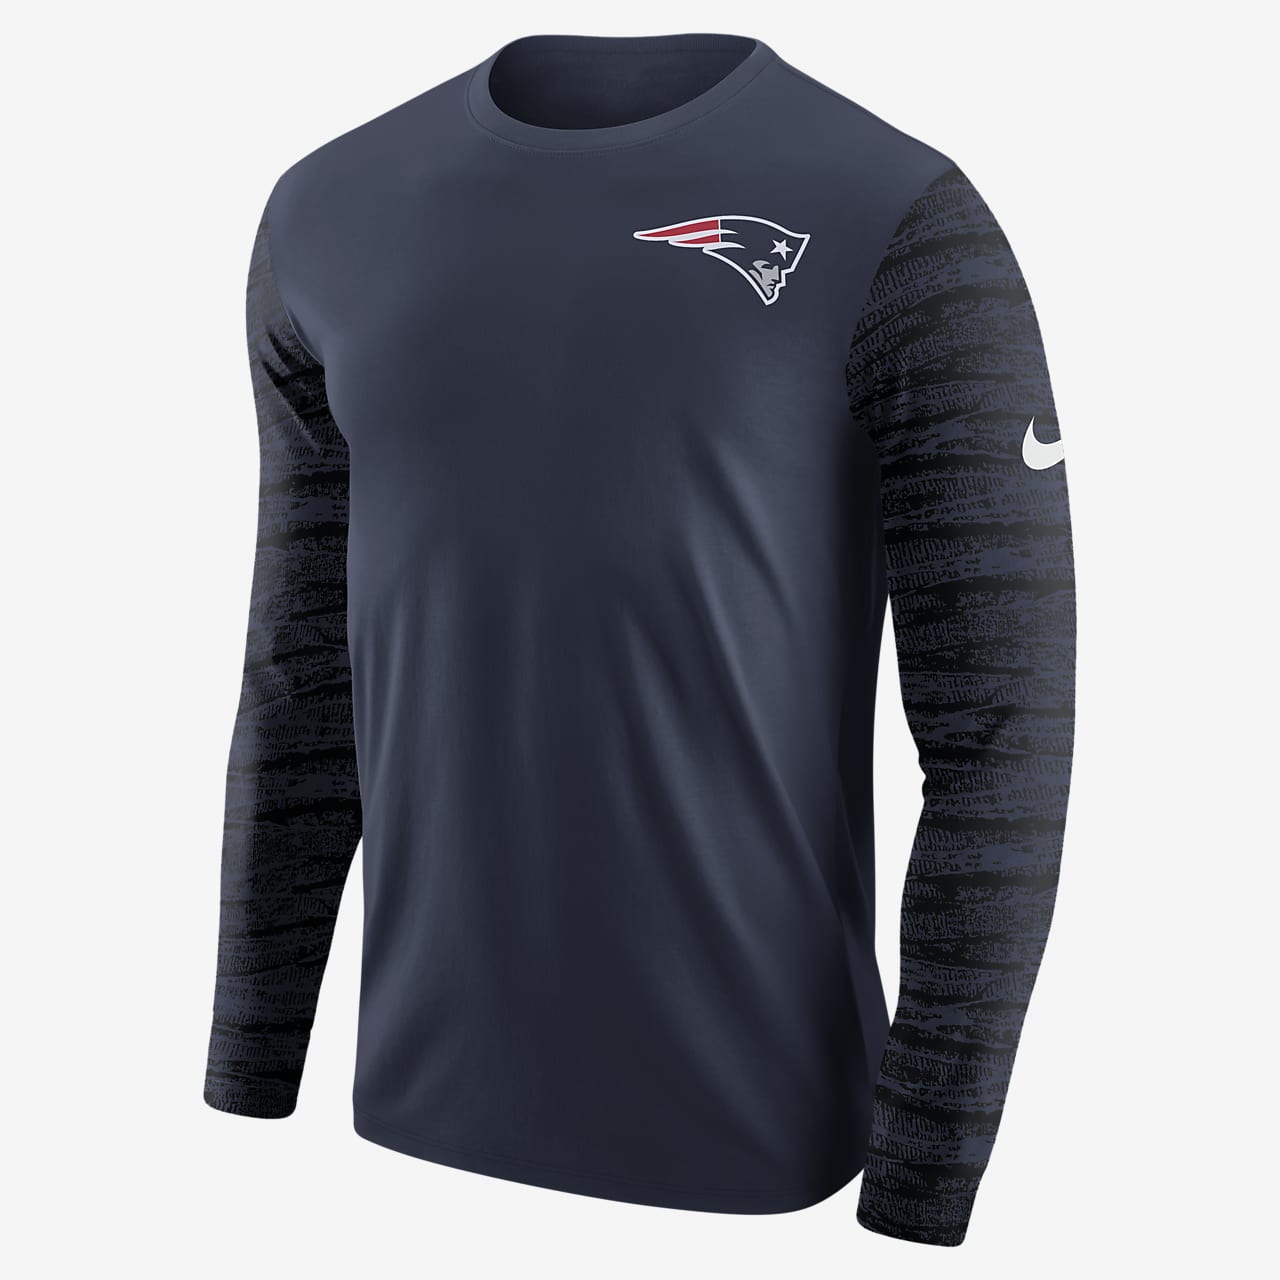 Ciudad Girar en descubierto pista Nike Enzyme Pattern (NFL Patriots) Men's Long-Sleeve T-Shirt. Nike GB